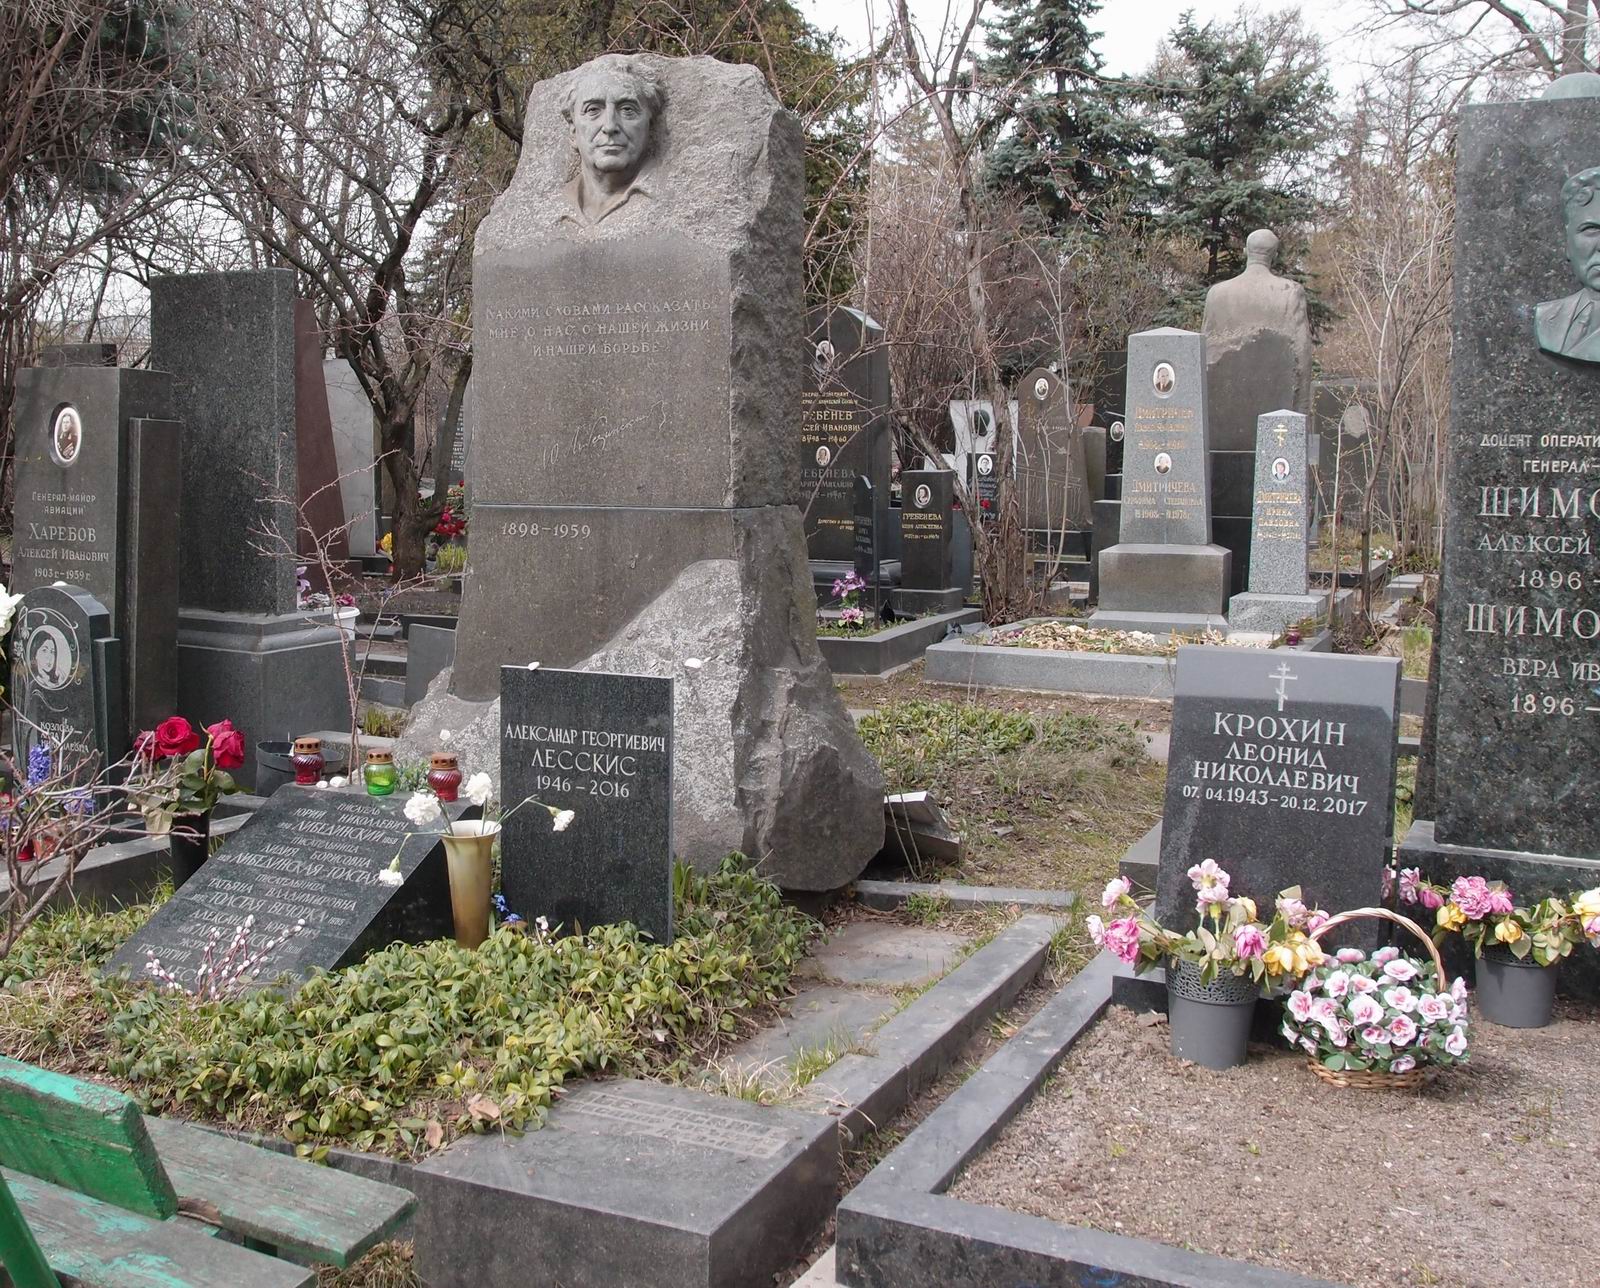 Памятник на могиле Либединского Ю.Н. (1898-1959), ск. А.Елецкий, арх. В.Васнецов, на Новодевичьем кладбище (8-1-2).